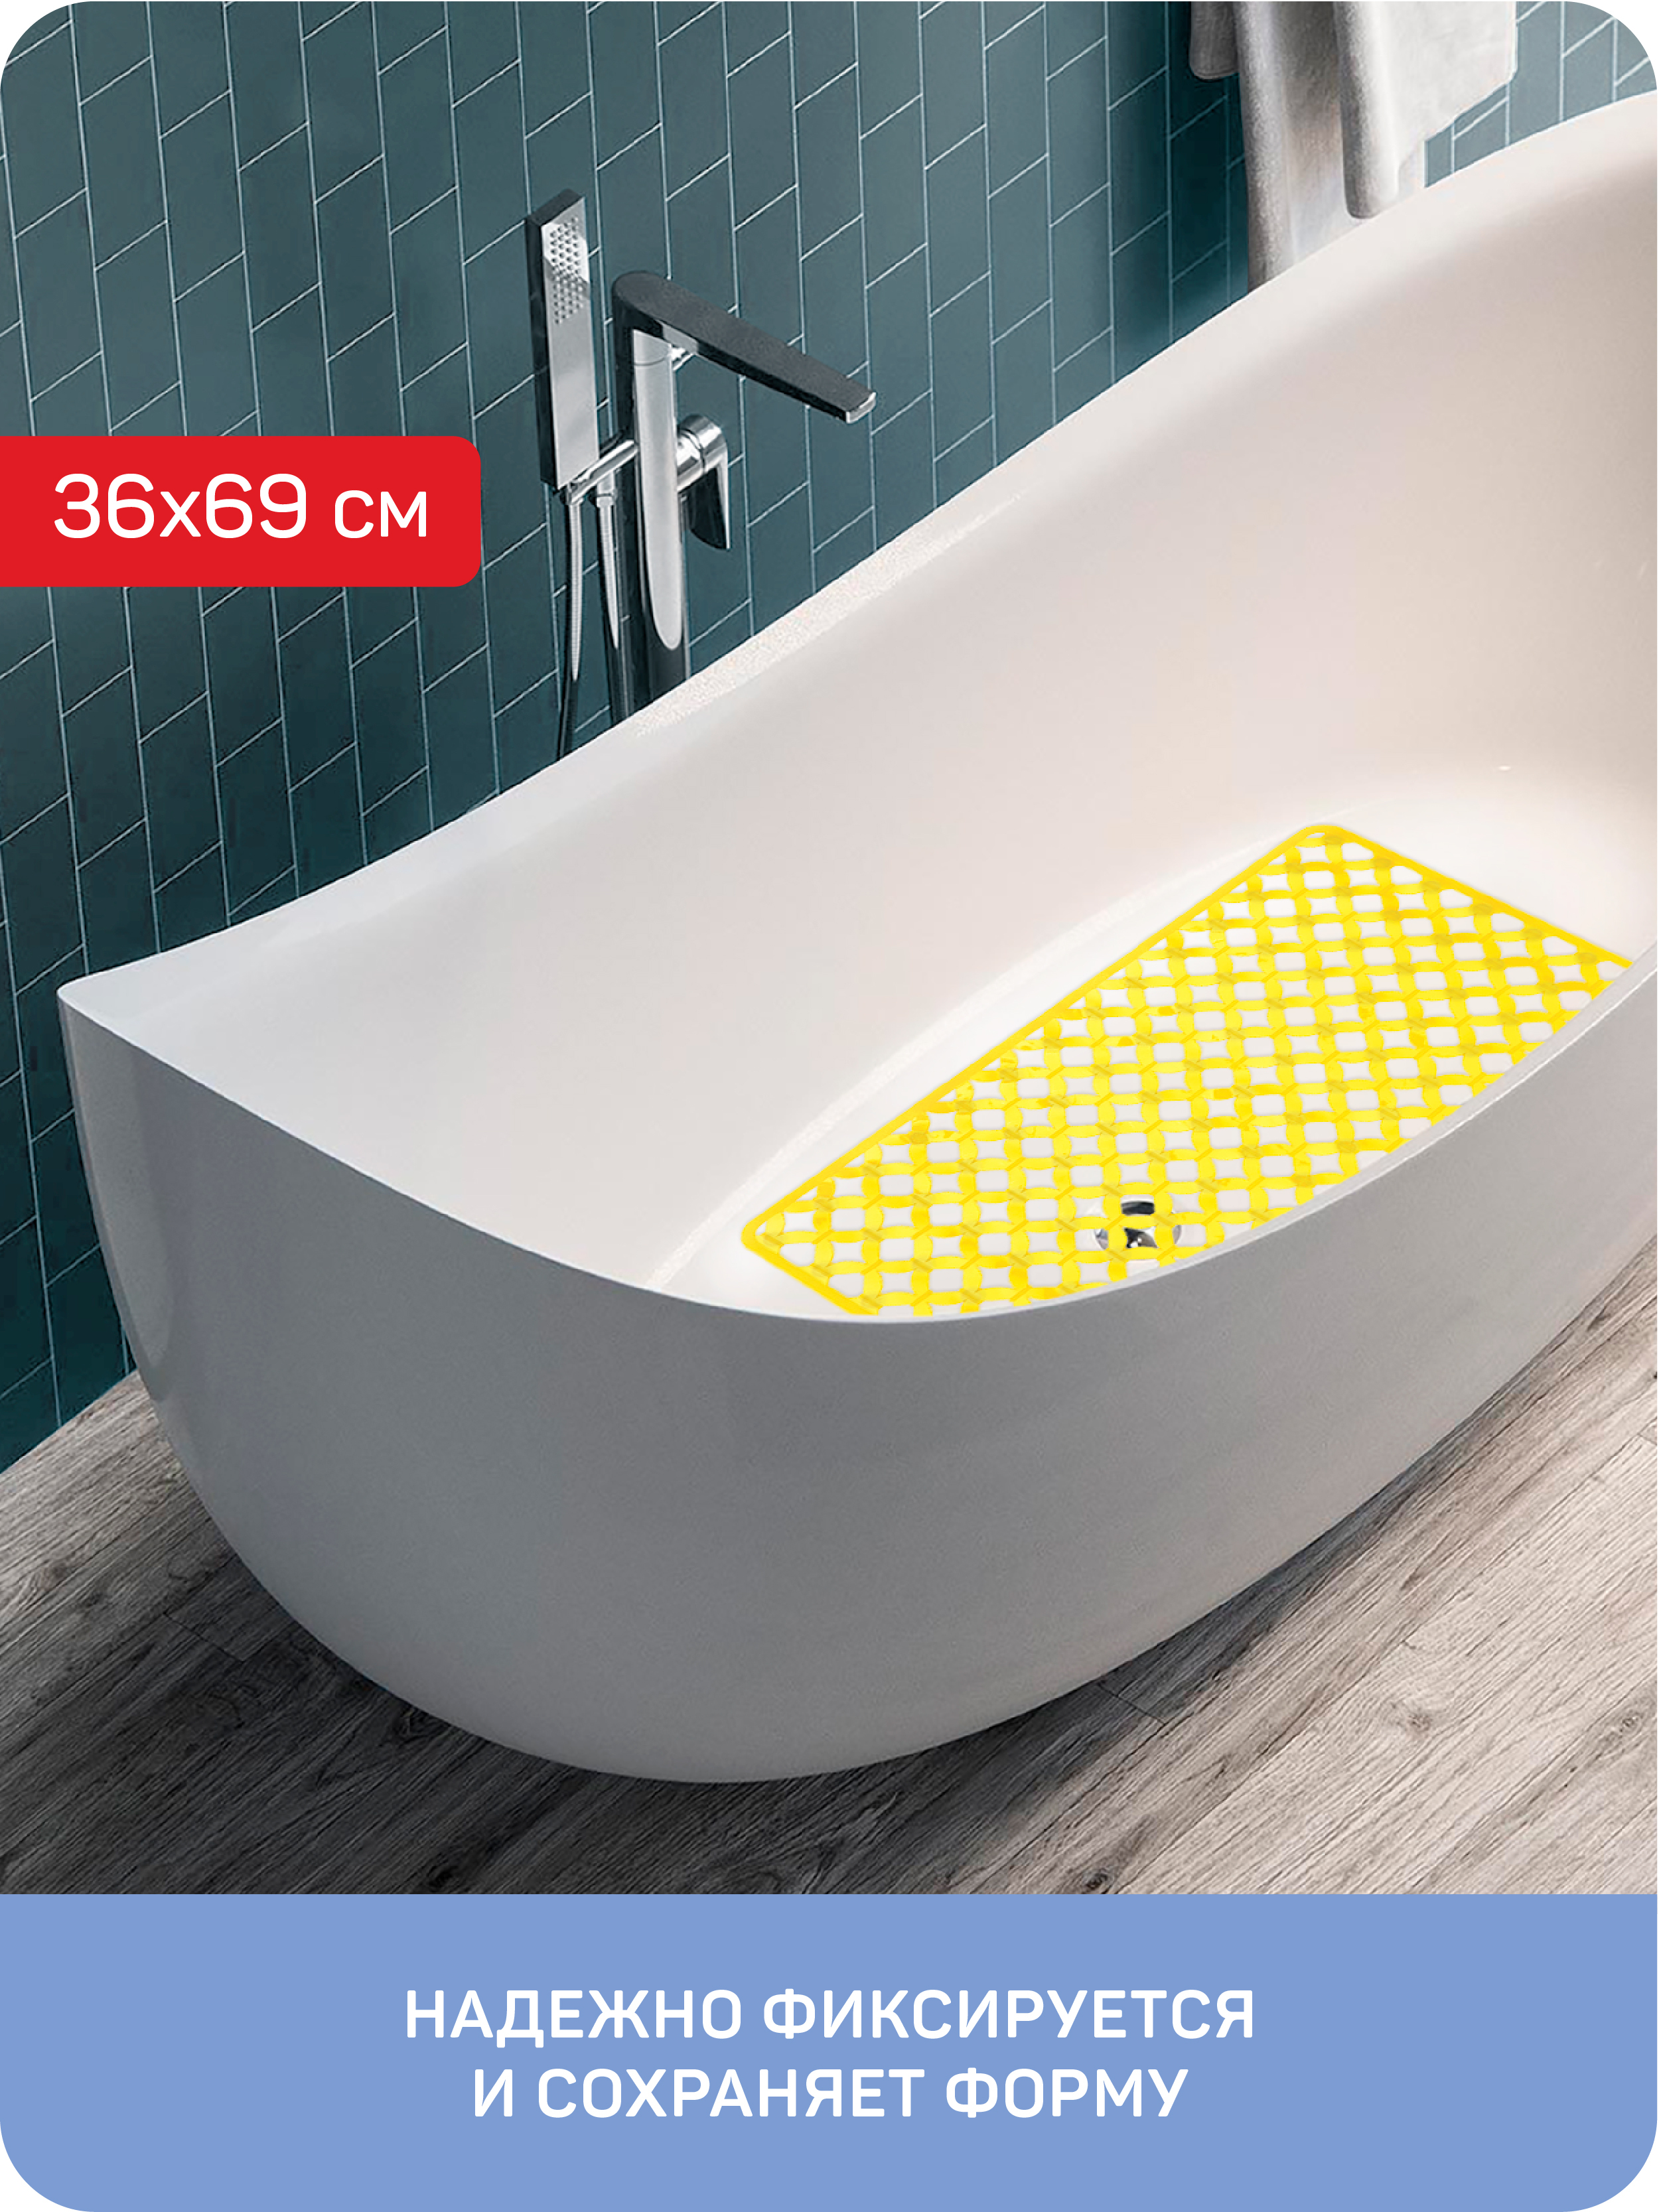 Коврик противоскользящий для ванны/душевой кабины Майорка, 36x69 см, желтый